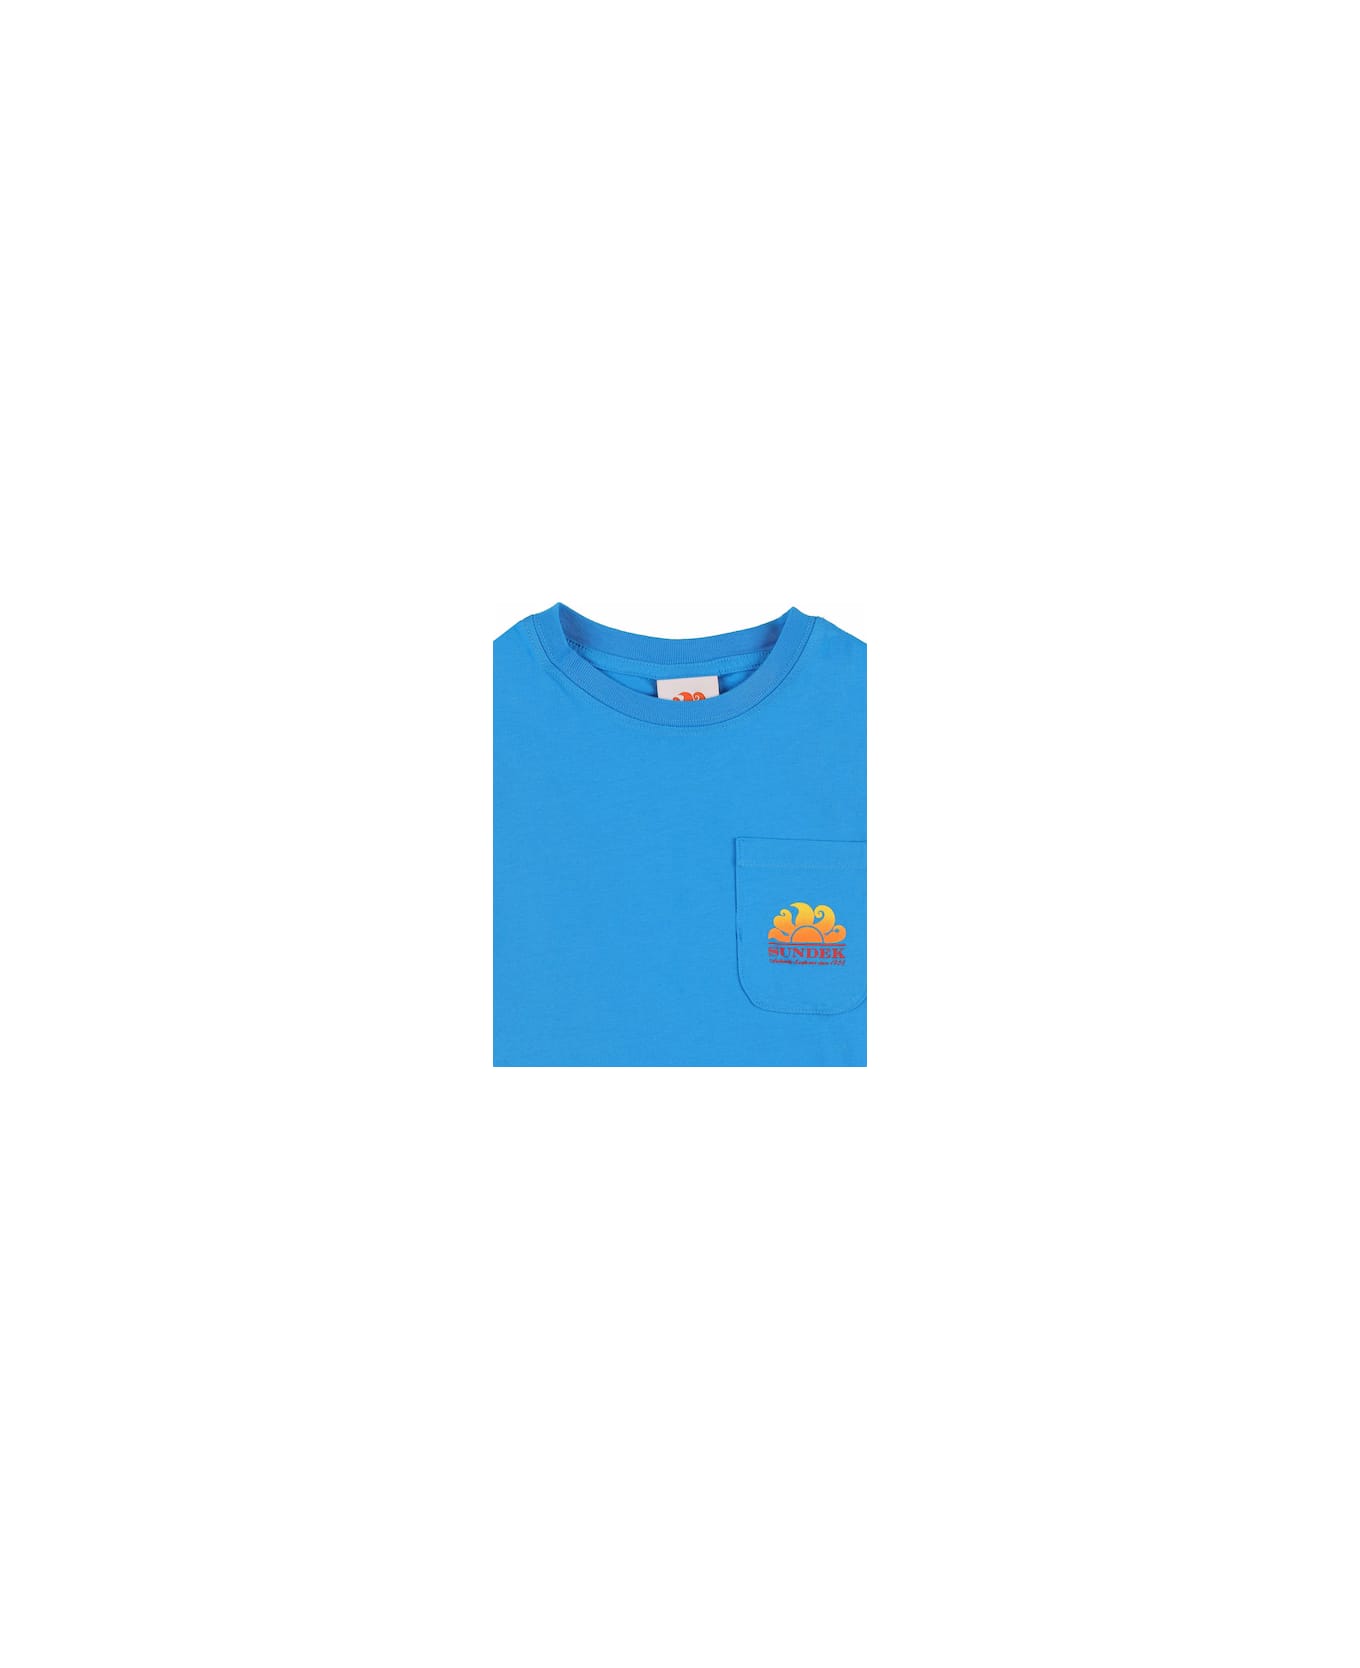 Sundek T-shirt With Print - Light blue